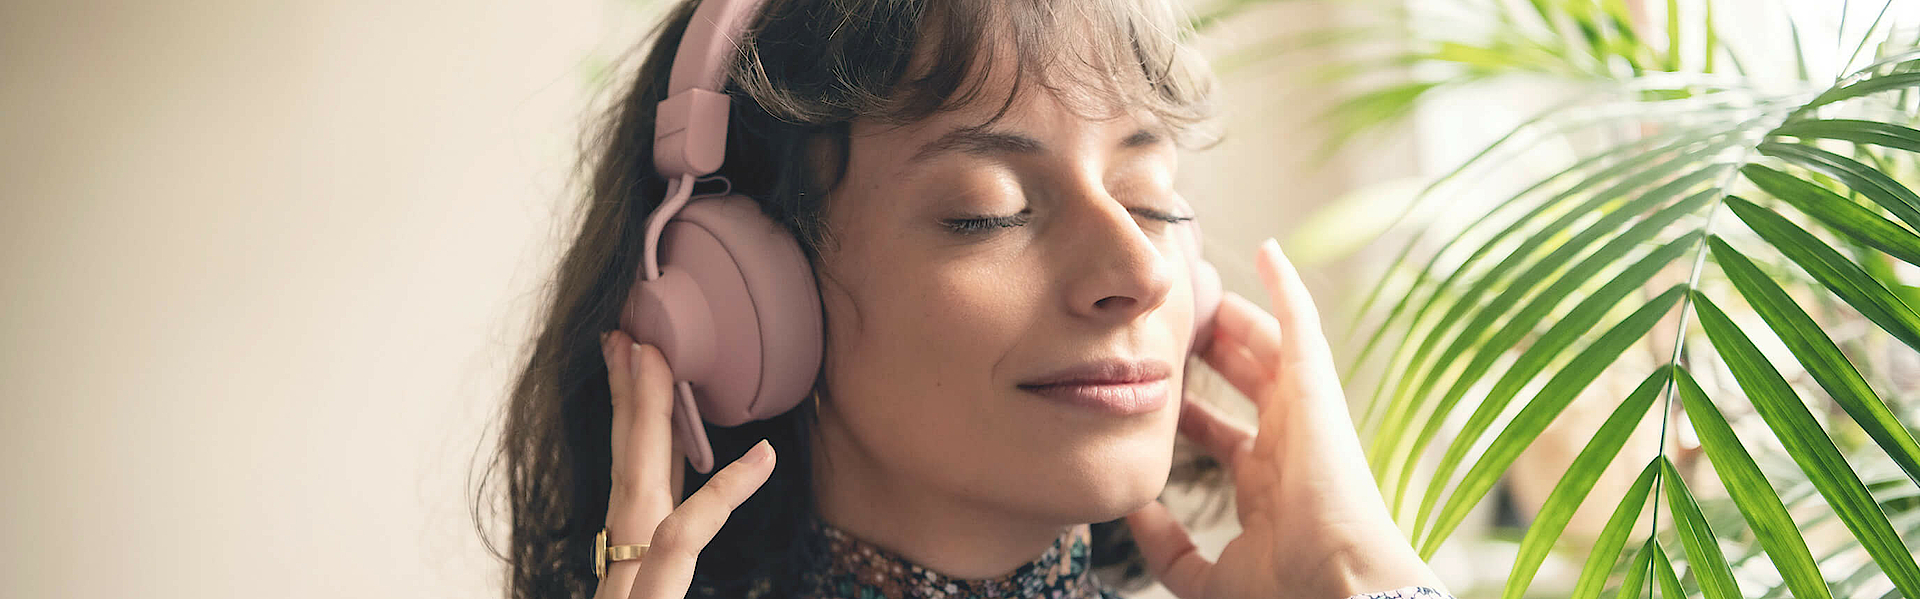 Frau hört über Kopfhörer Musik, sie hat die Augen geschlossen und ist entspannt.